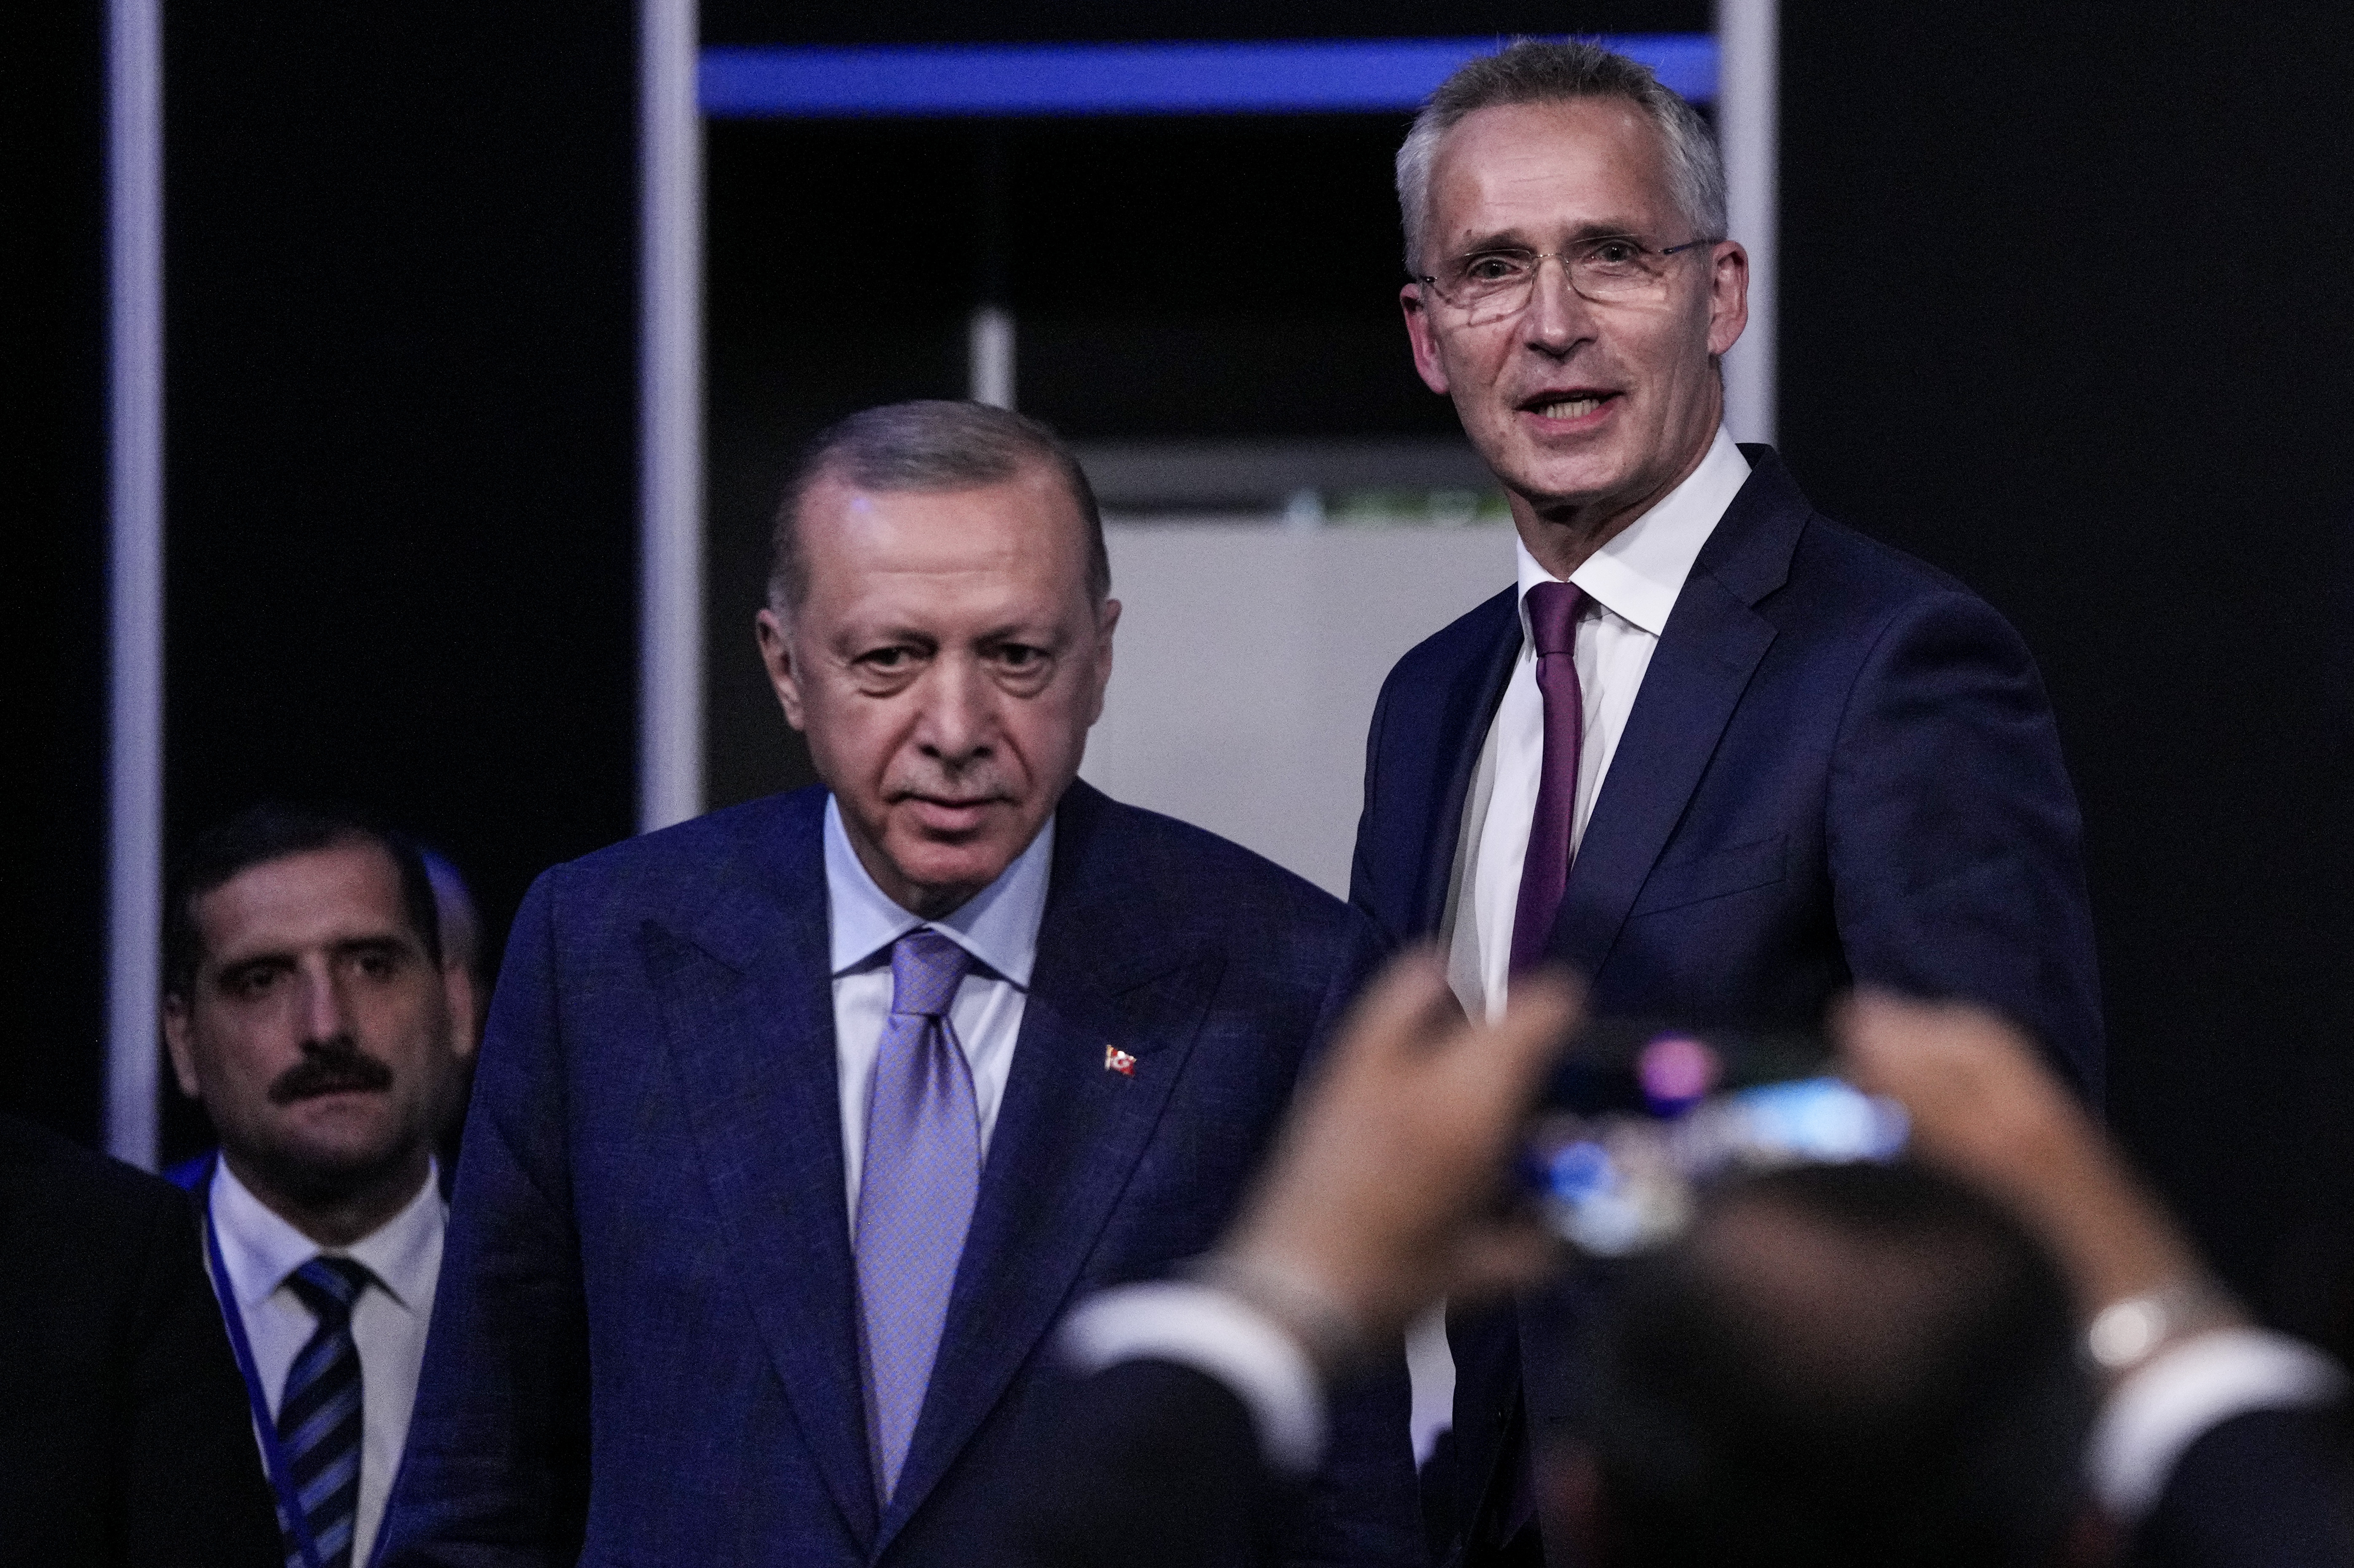 Swedia, Finlandia untuk bergabung dengan NATO setelah Turki mencabut keberatan